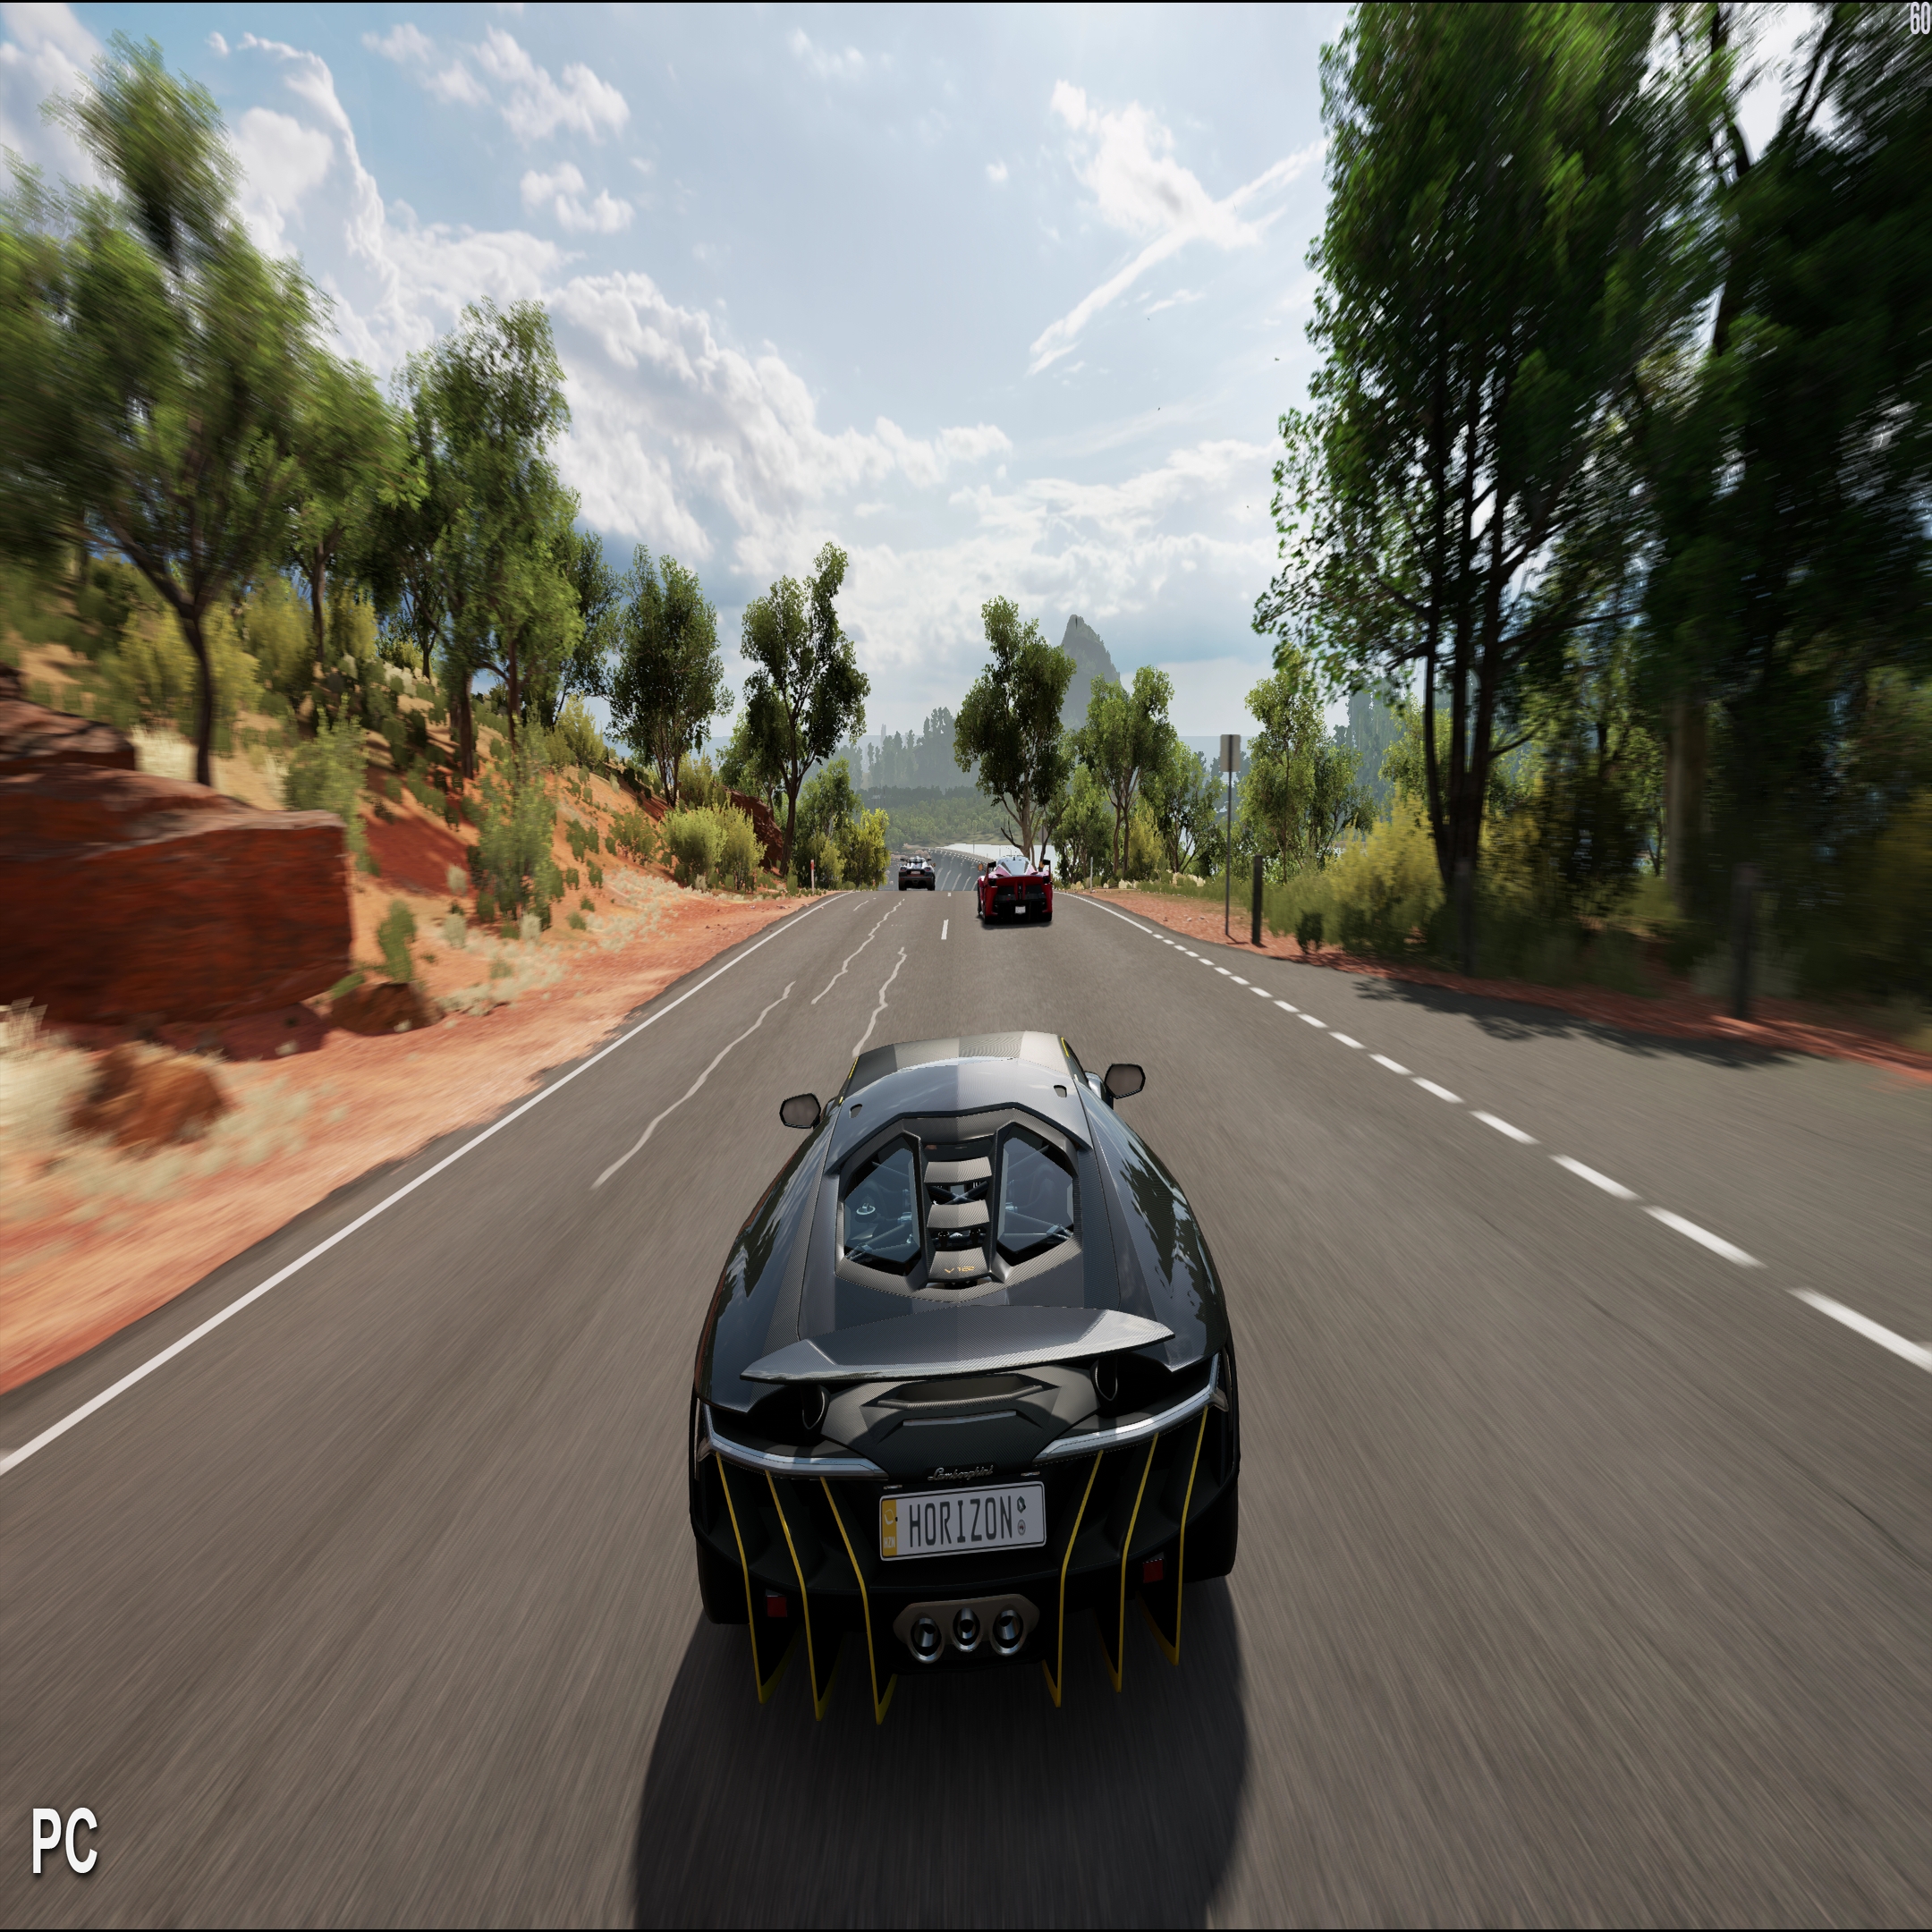 Forza Horizon 3 Gameplay (PC HD) [1080p60FPS] 